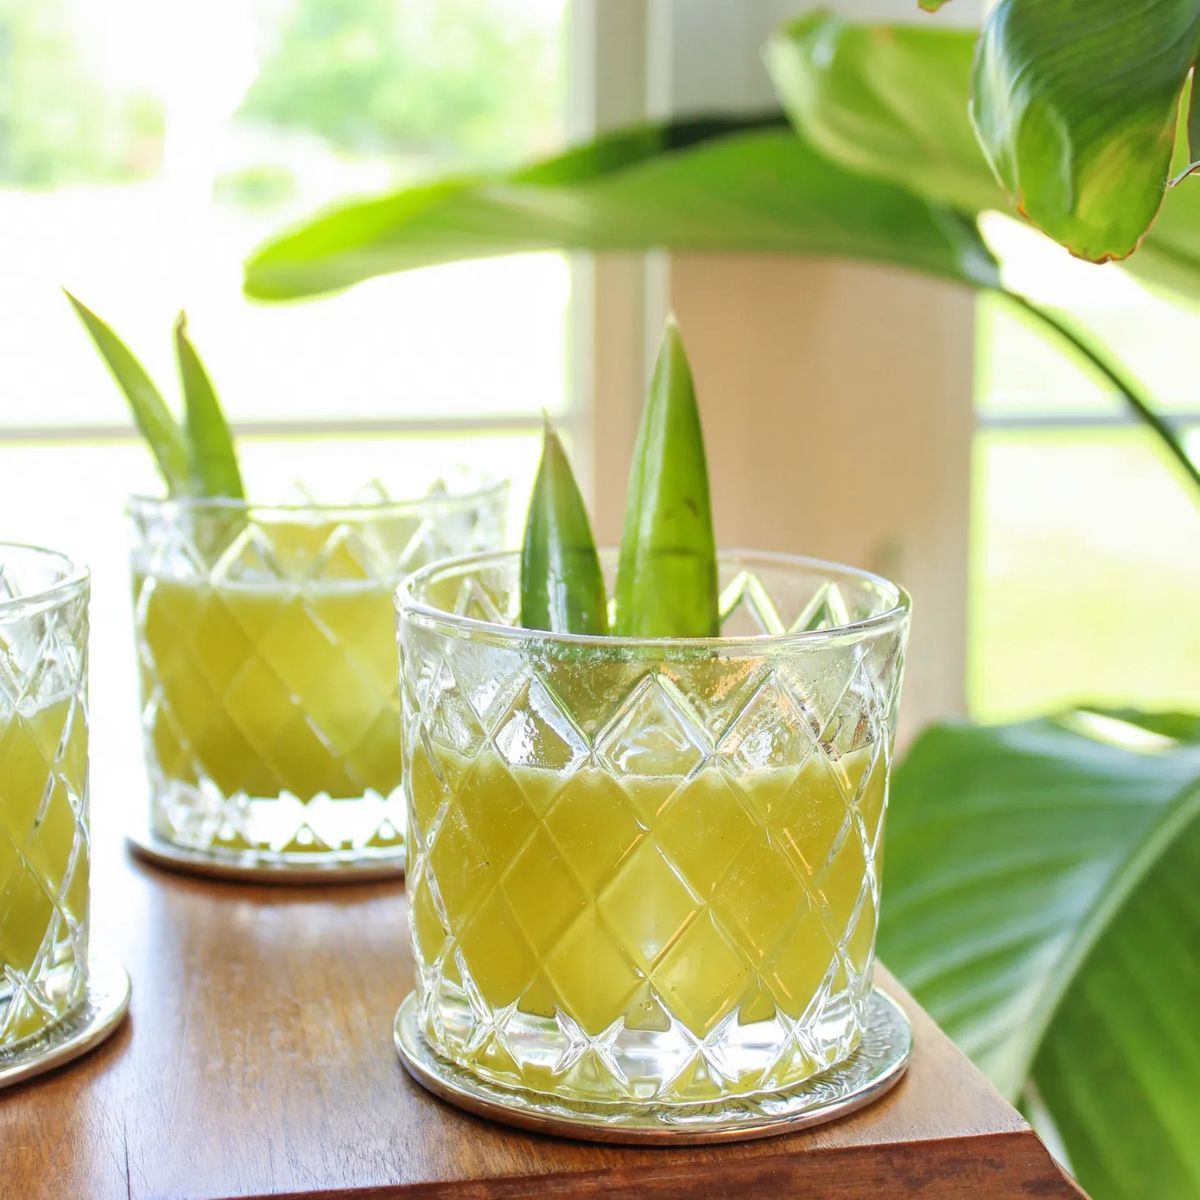 A daquiri inspired cocktail